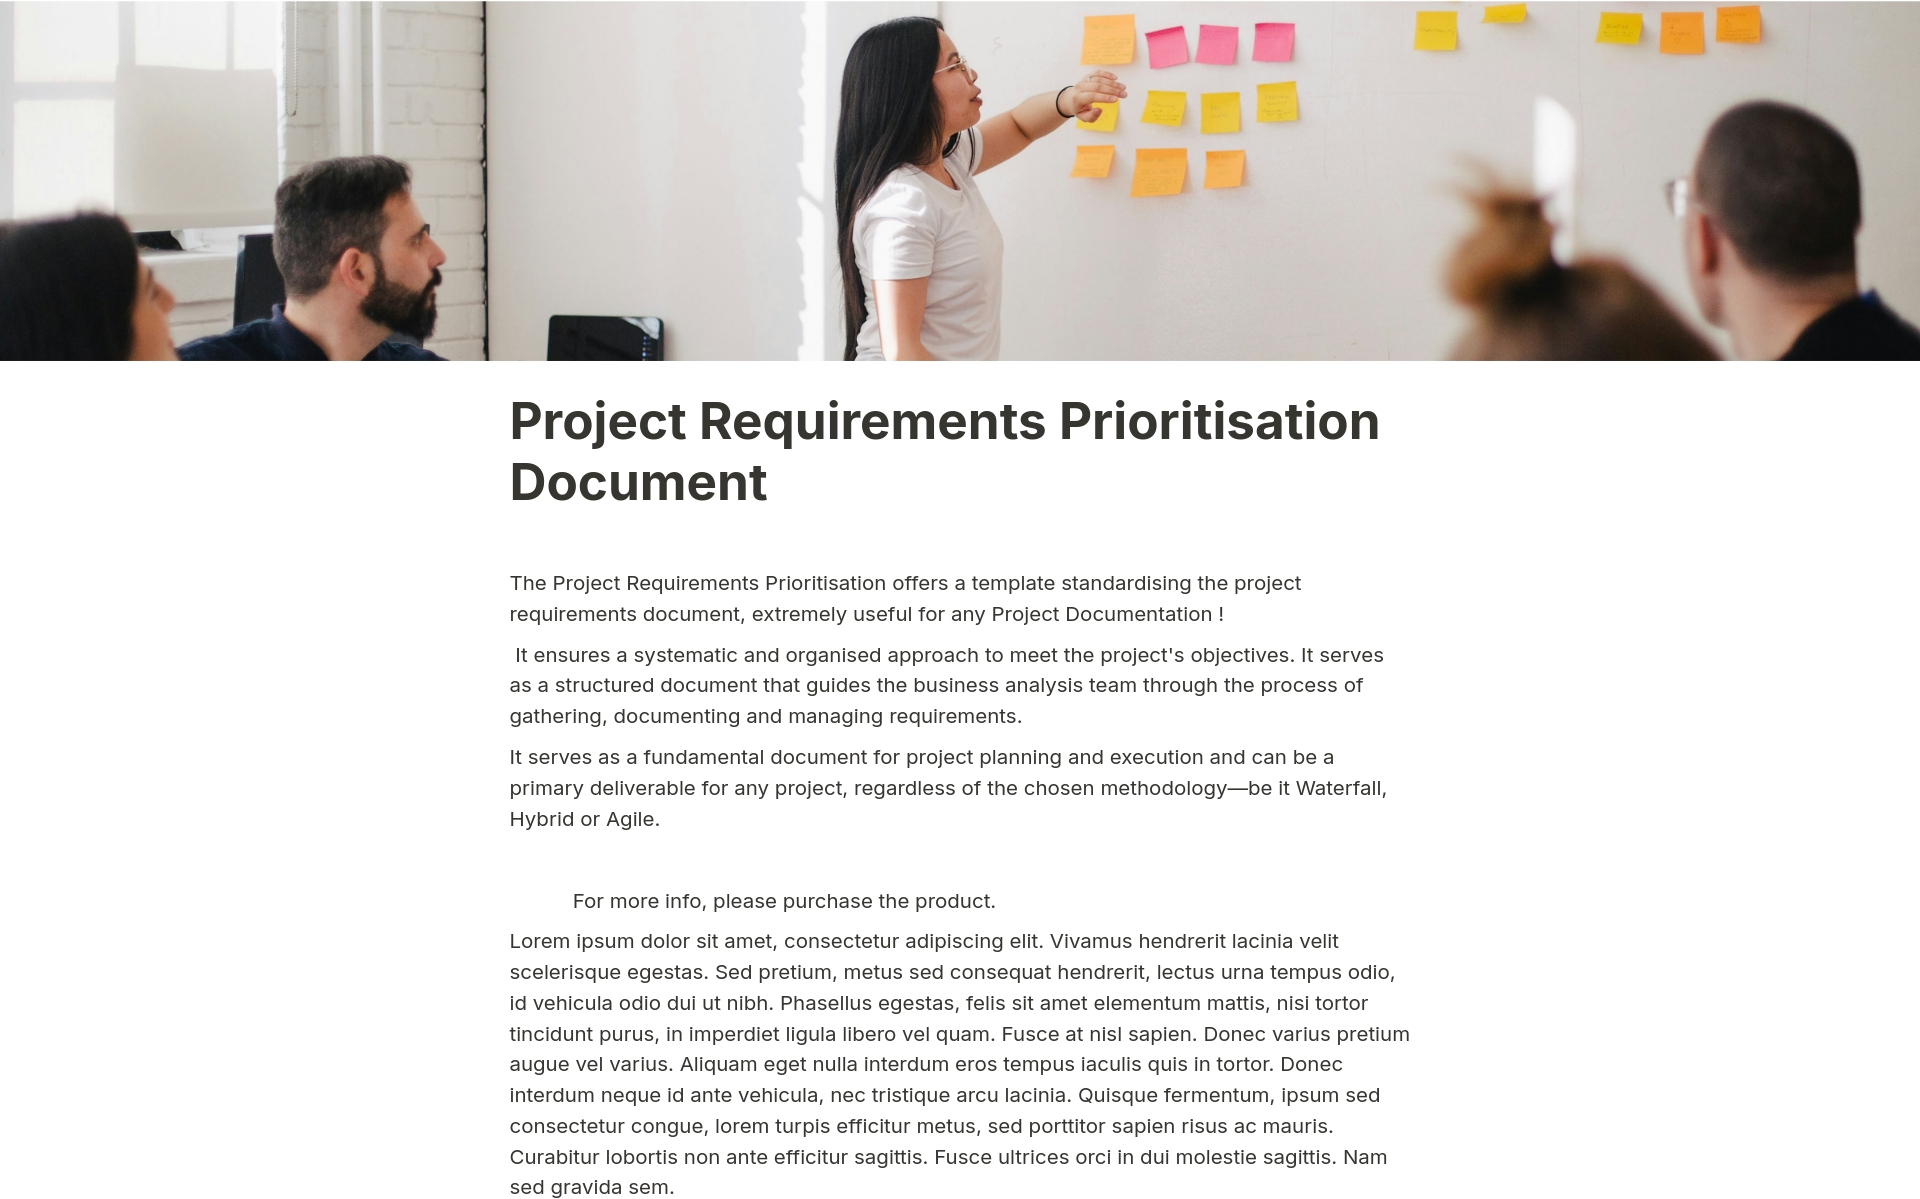 En förhandsgranskning av mallen för Project Requirements Prioritisation Document